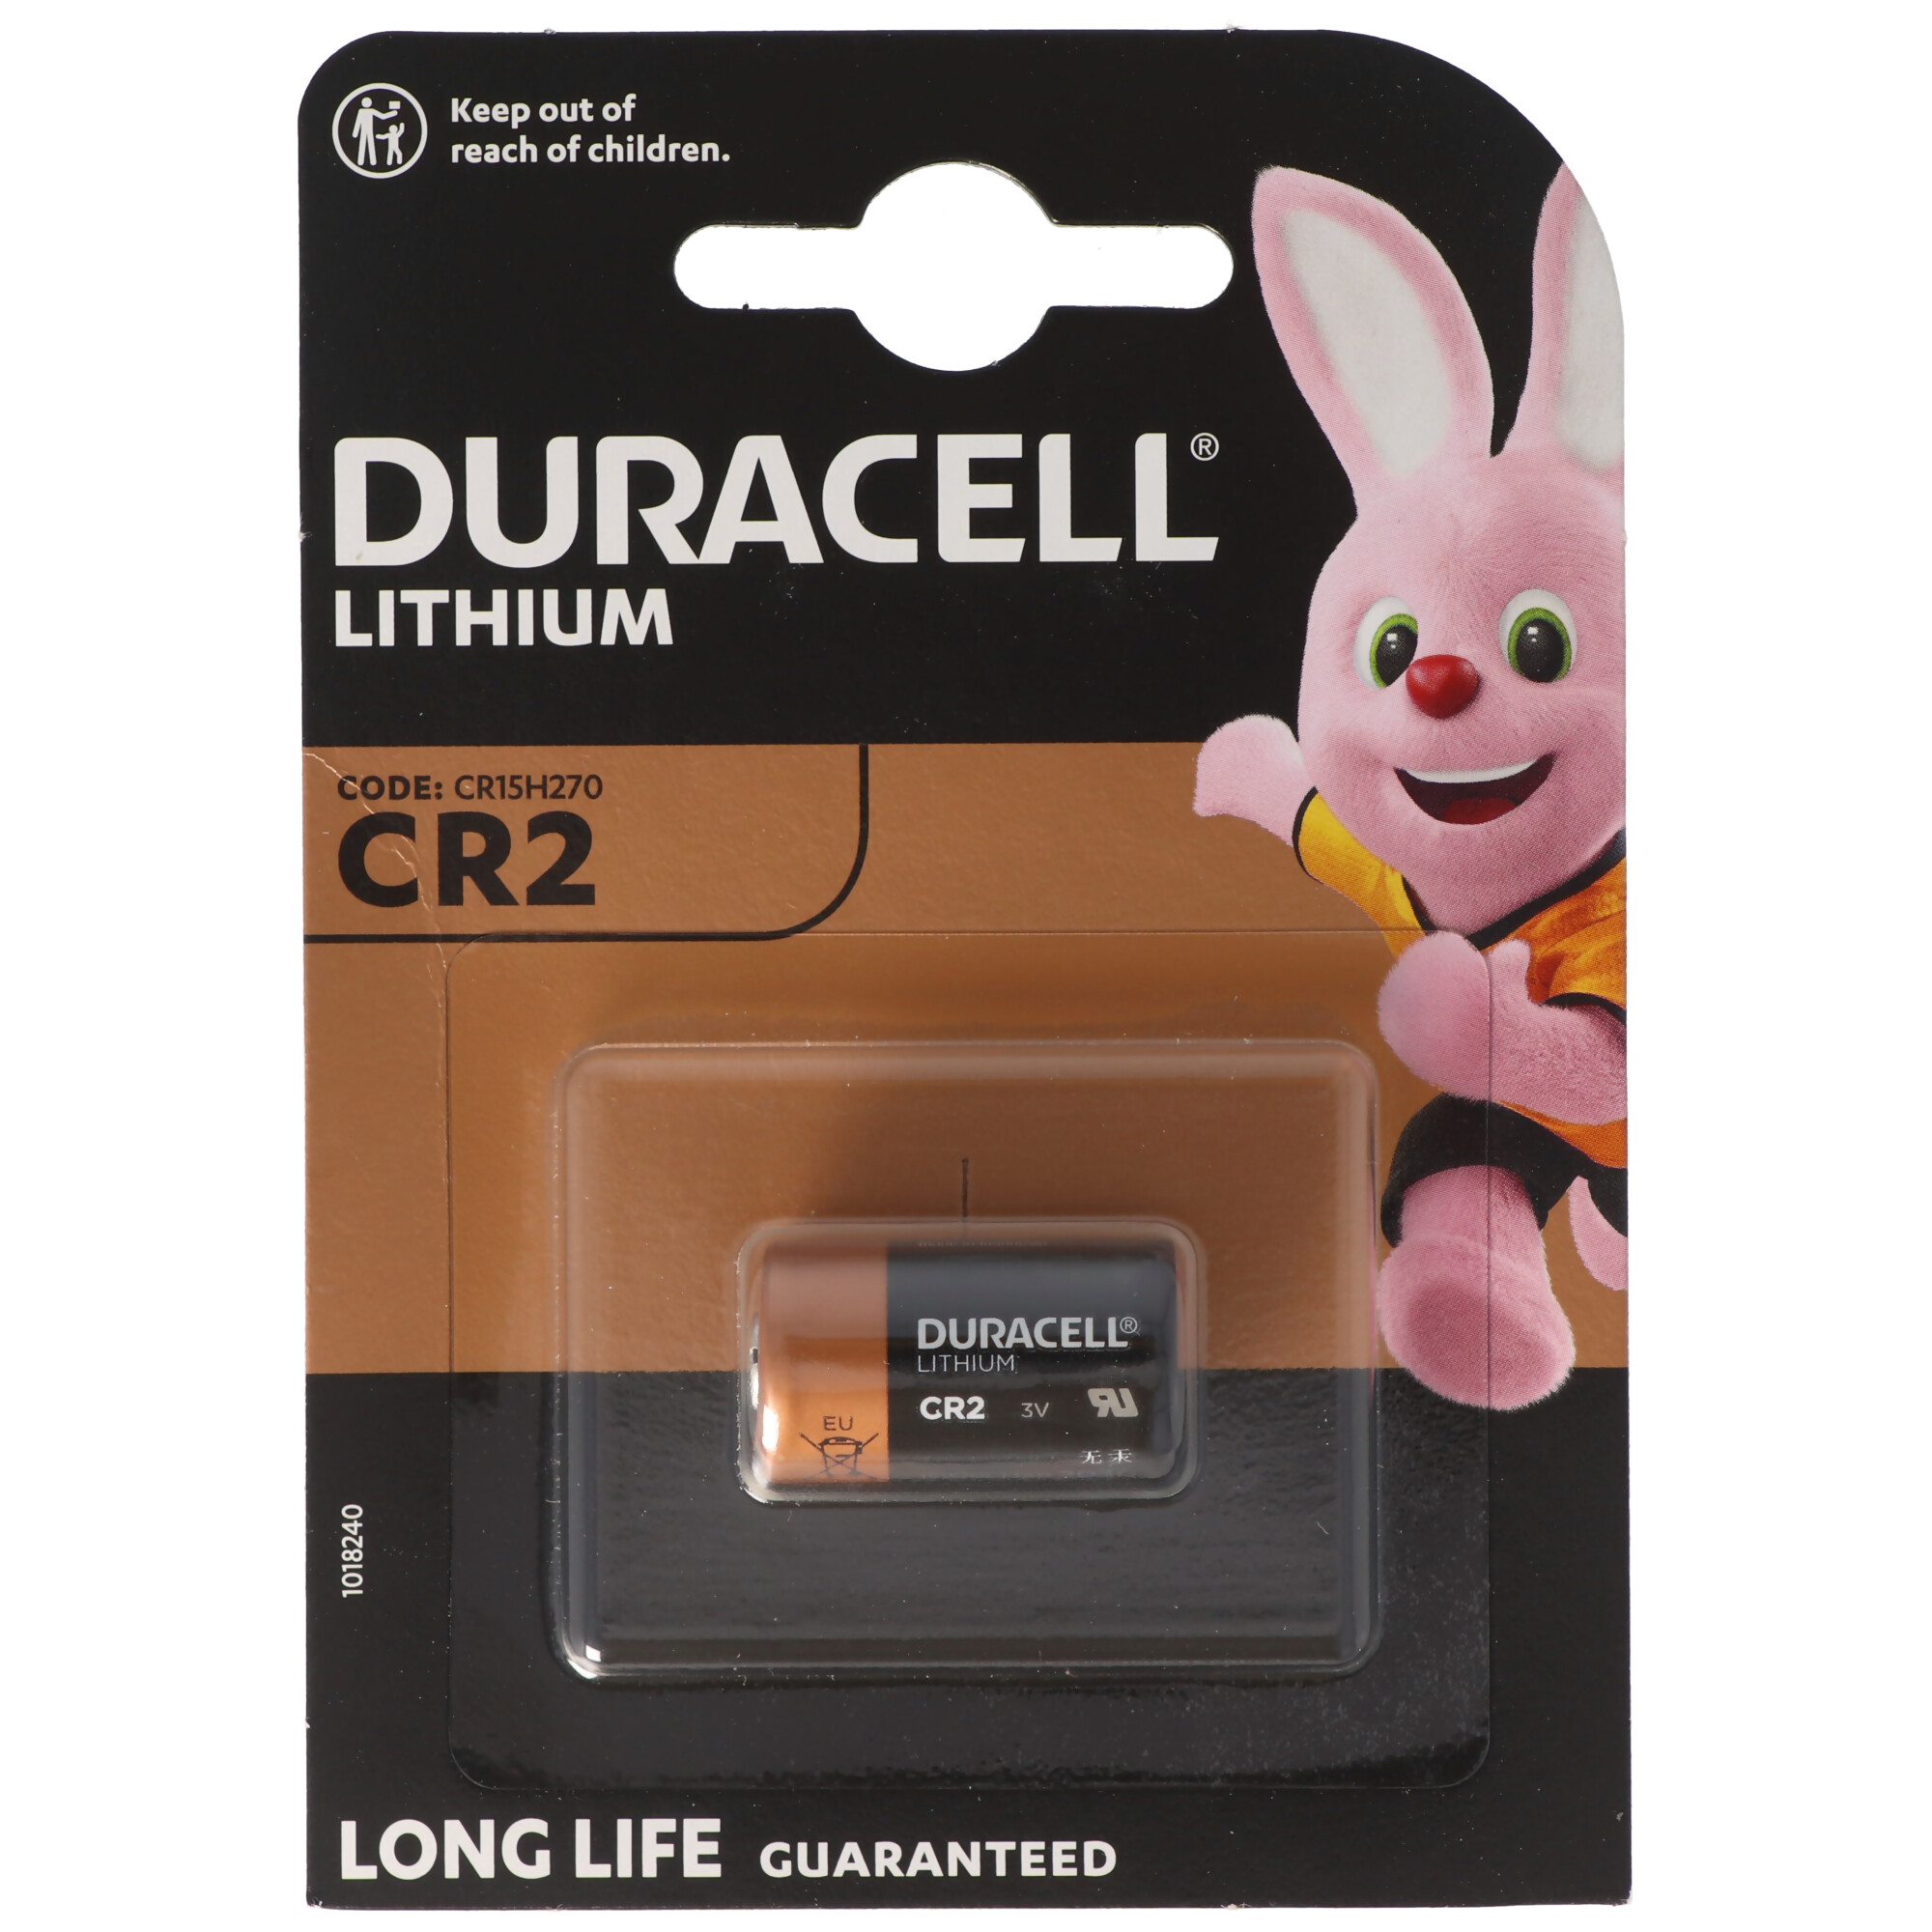 Duracell Photobatterie CR2 Lithium 3Vmax. 850mAh im 1er Blister, CR15H270